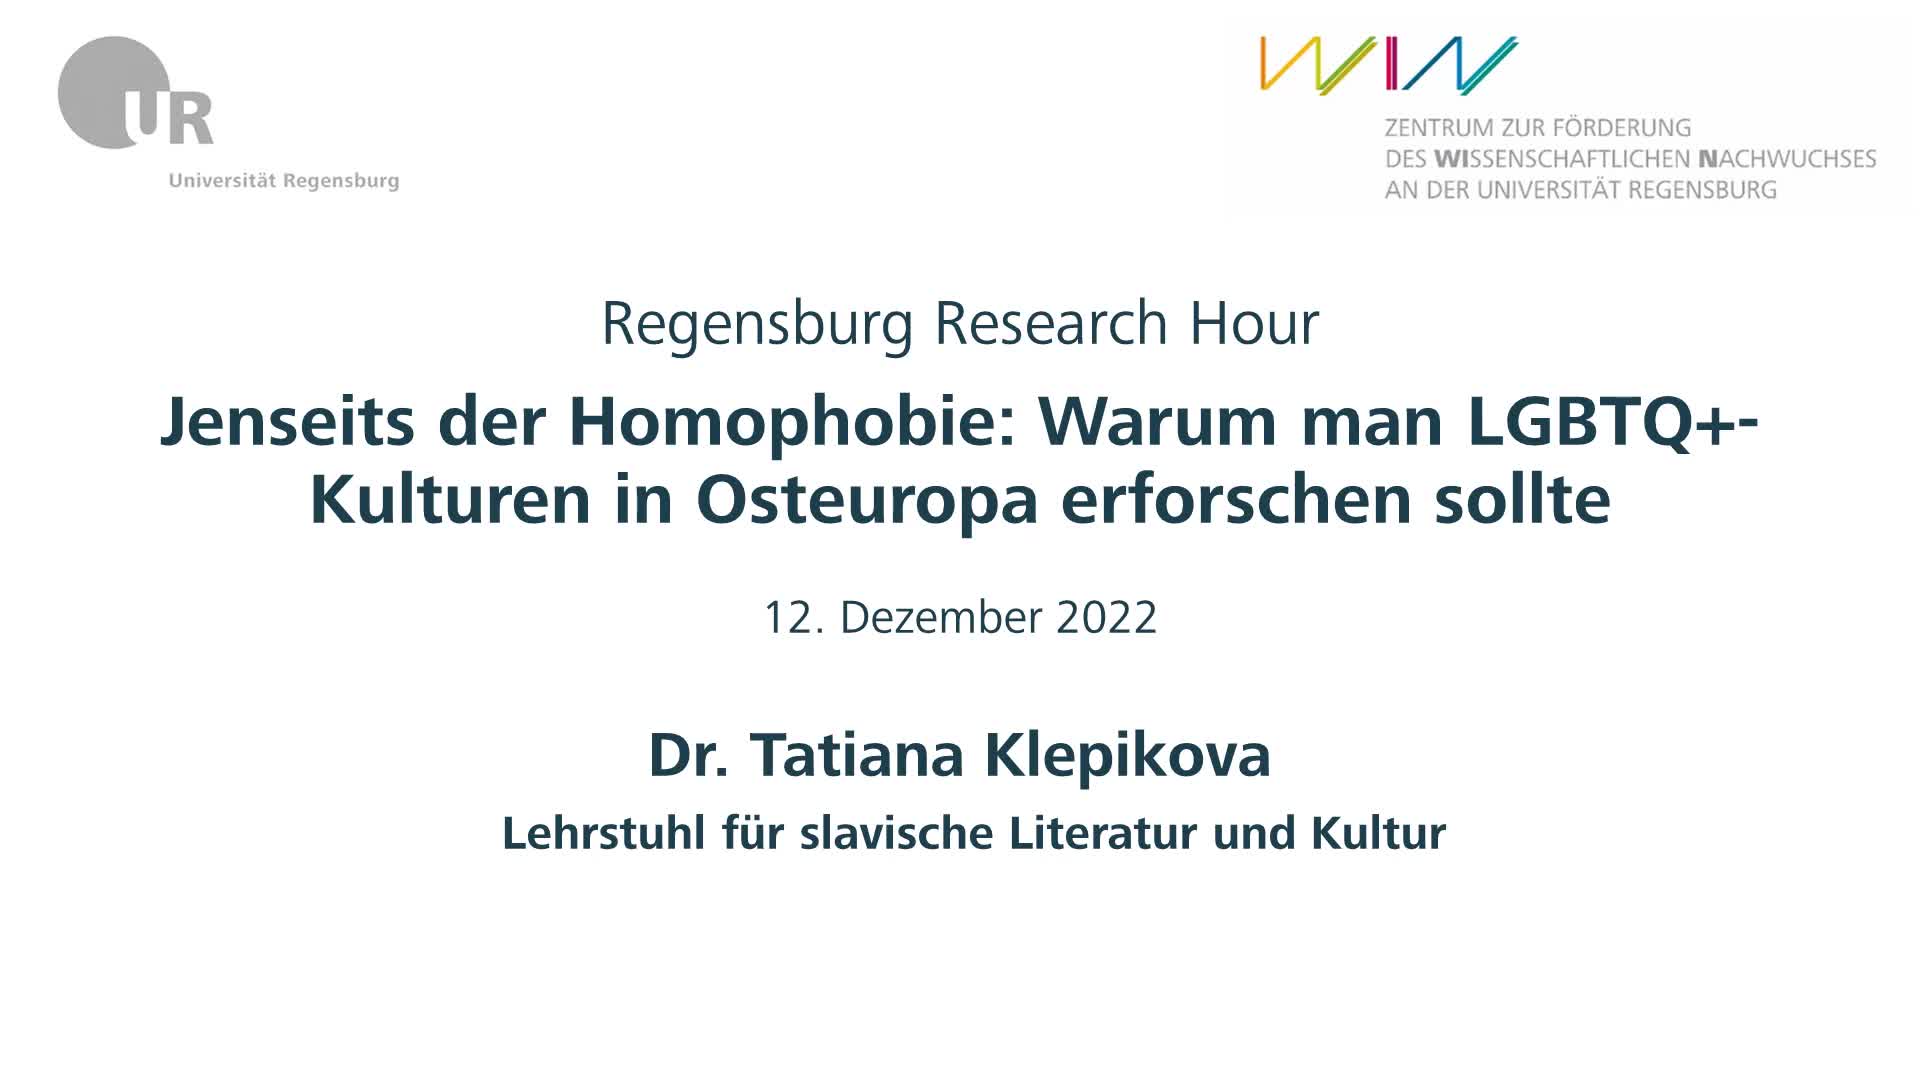 Jenseits der Homophobie: Warum man LGBTQ+-Kulturen in Osteuropa erforschen sollte